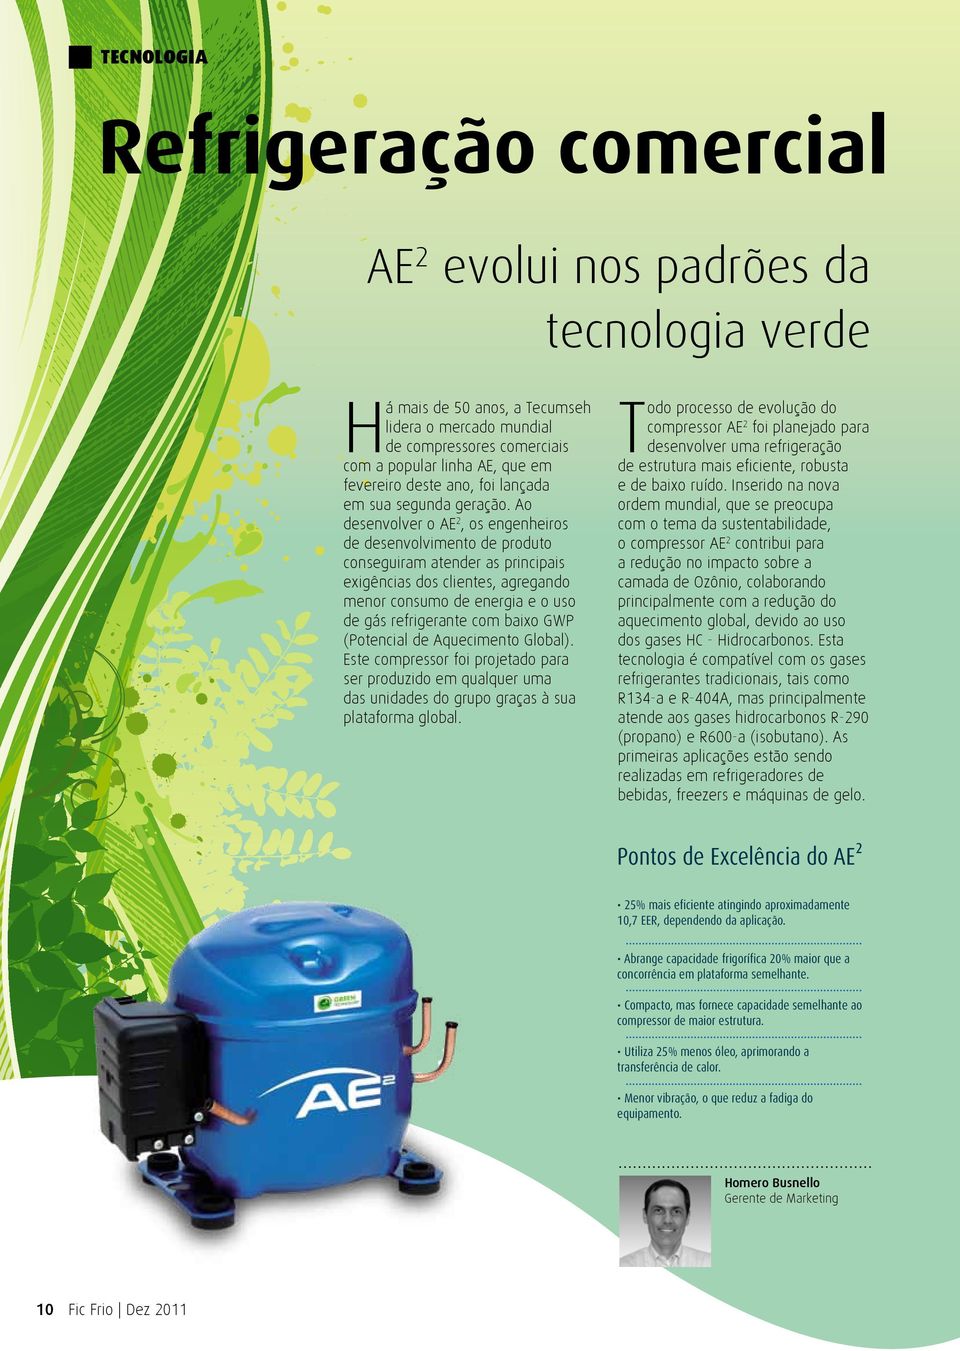 Ao desenvolver o AE2, os engenheiros de desenvolvimento de produto conseguiram atender as principais exigências dos clientes, agregando menor consumo de energia e o uso de gás refrigerante com baixo